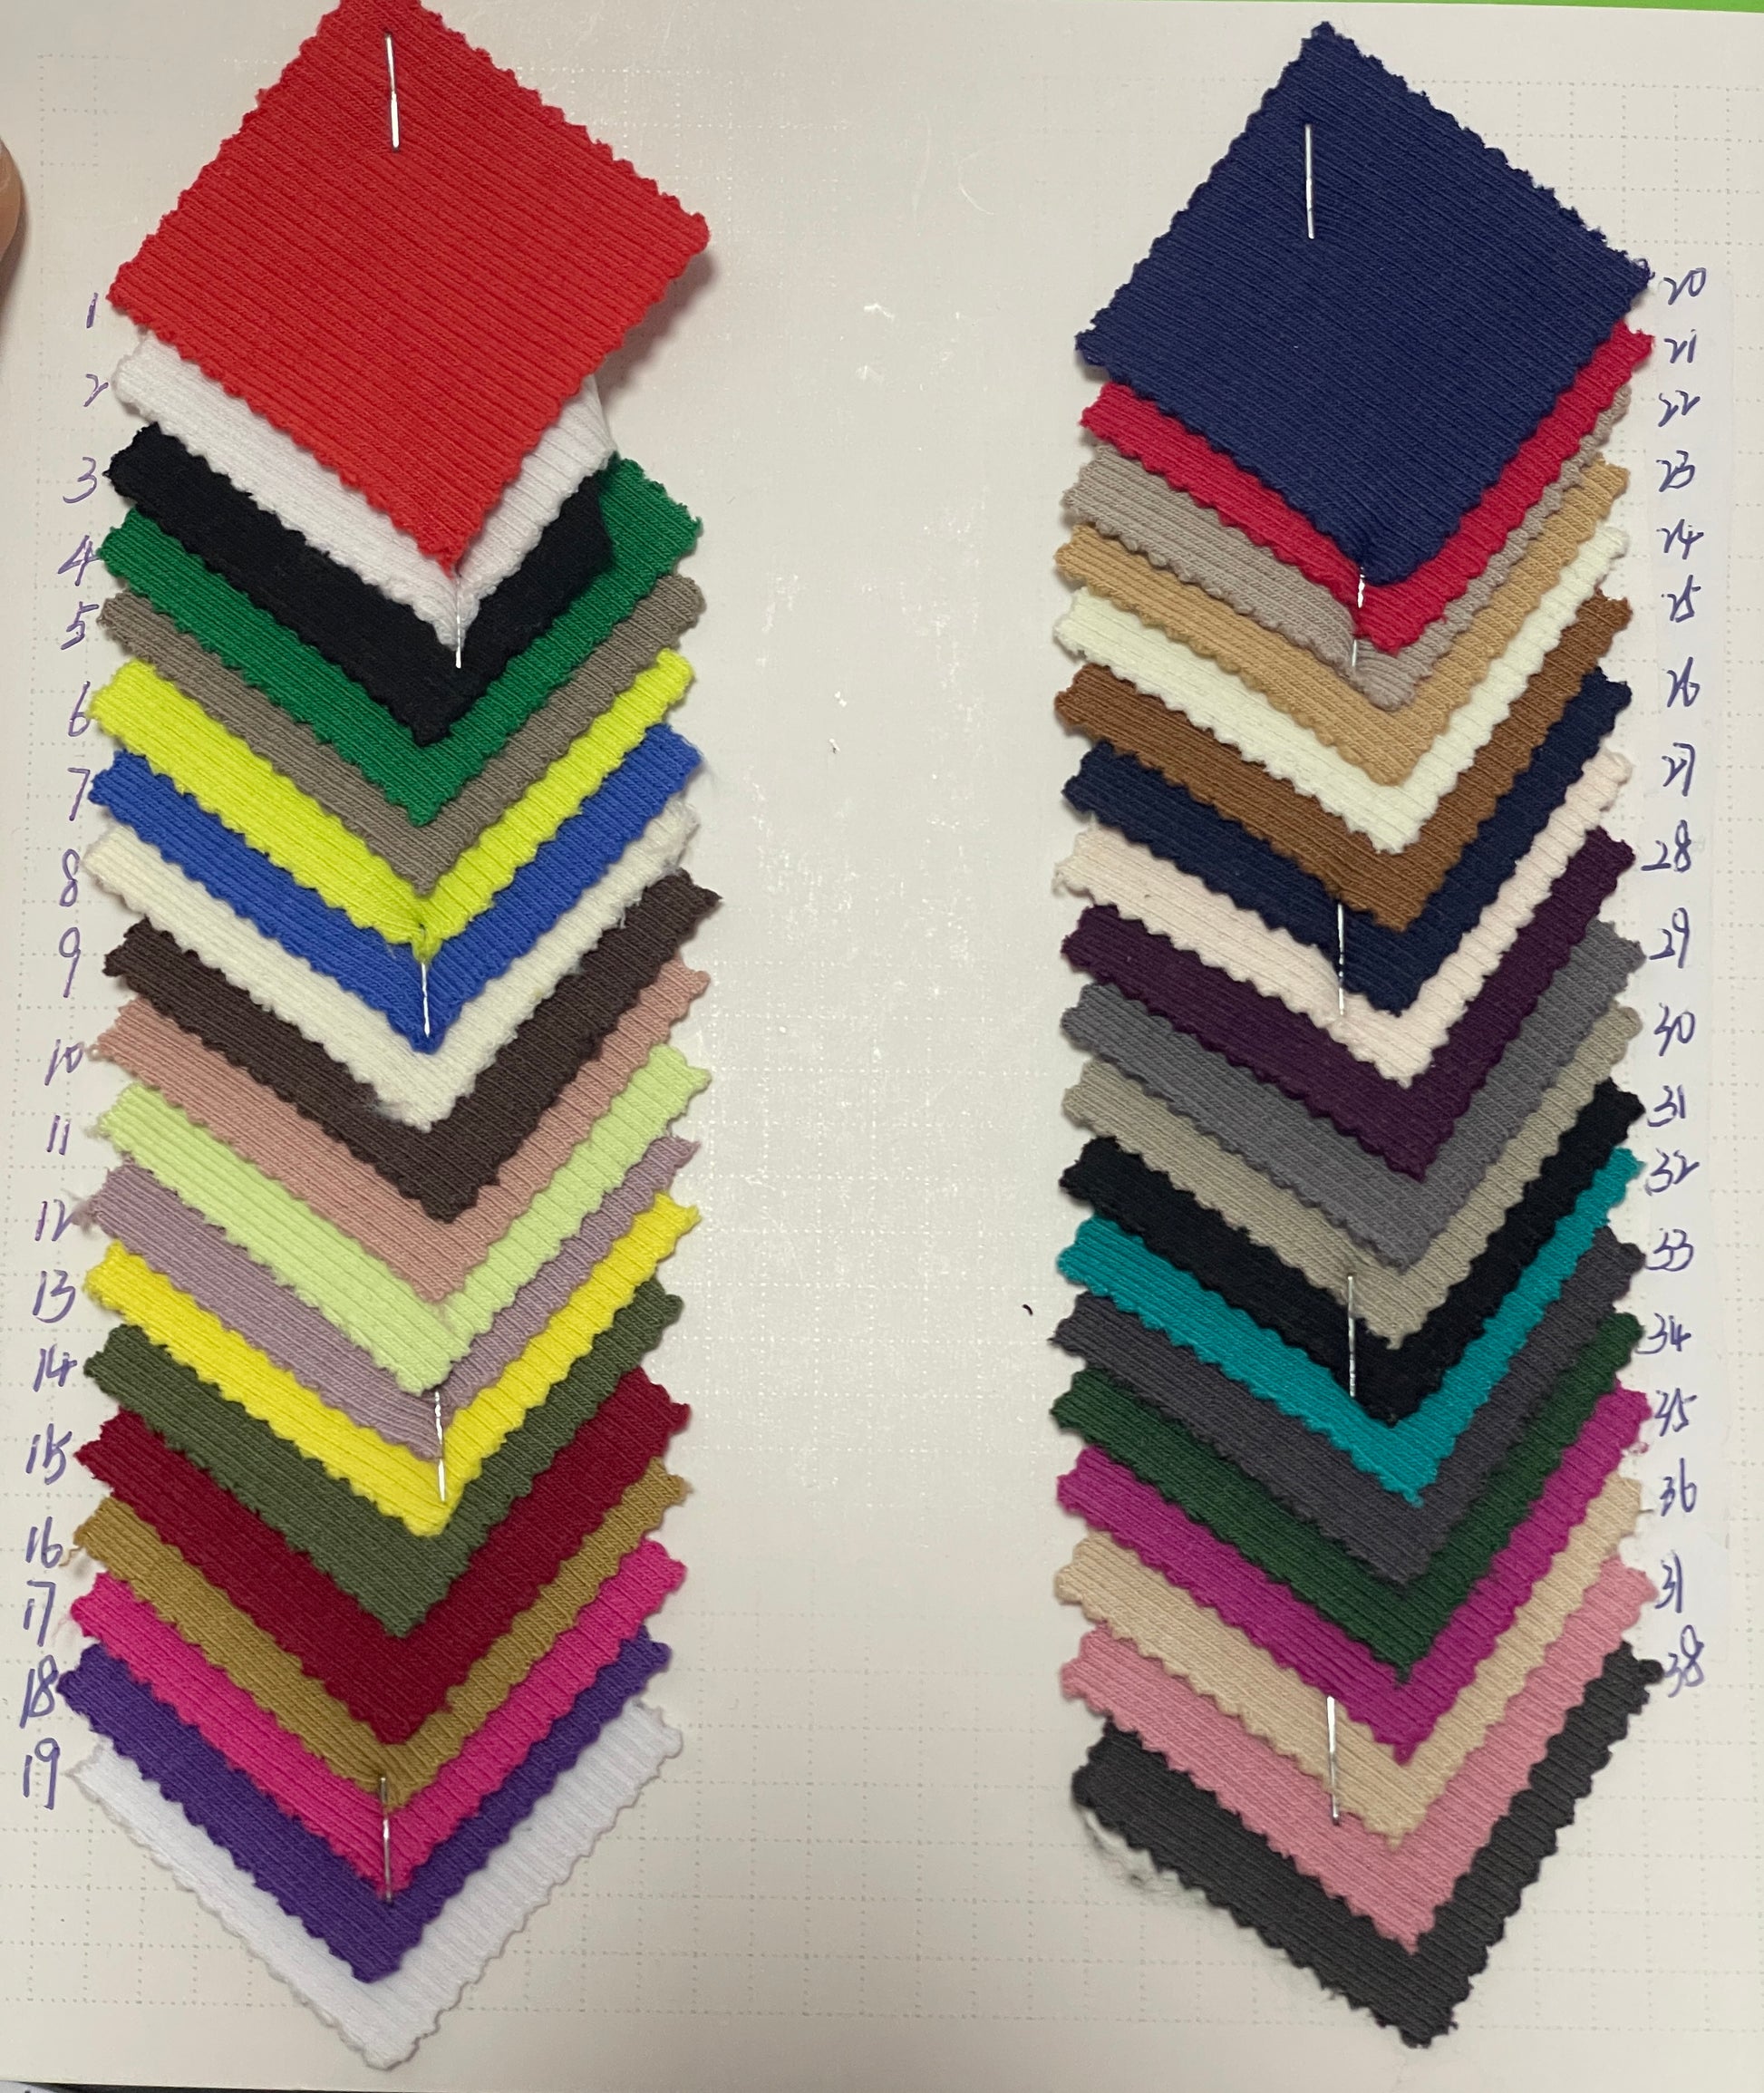 Rib Texture Knit Fabric - Natasha Fabric